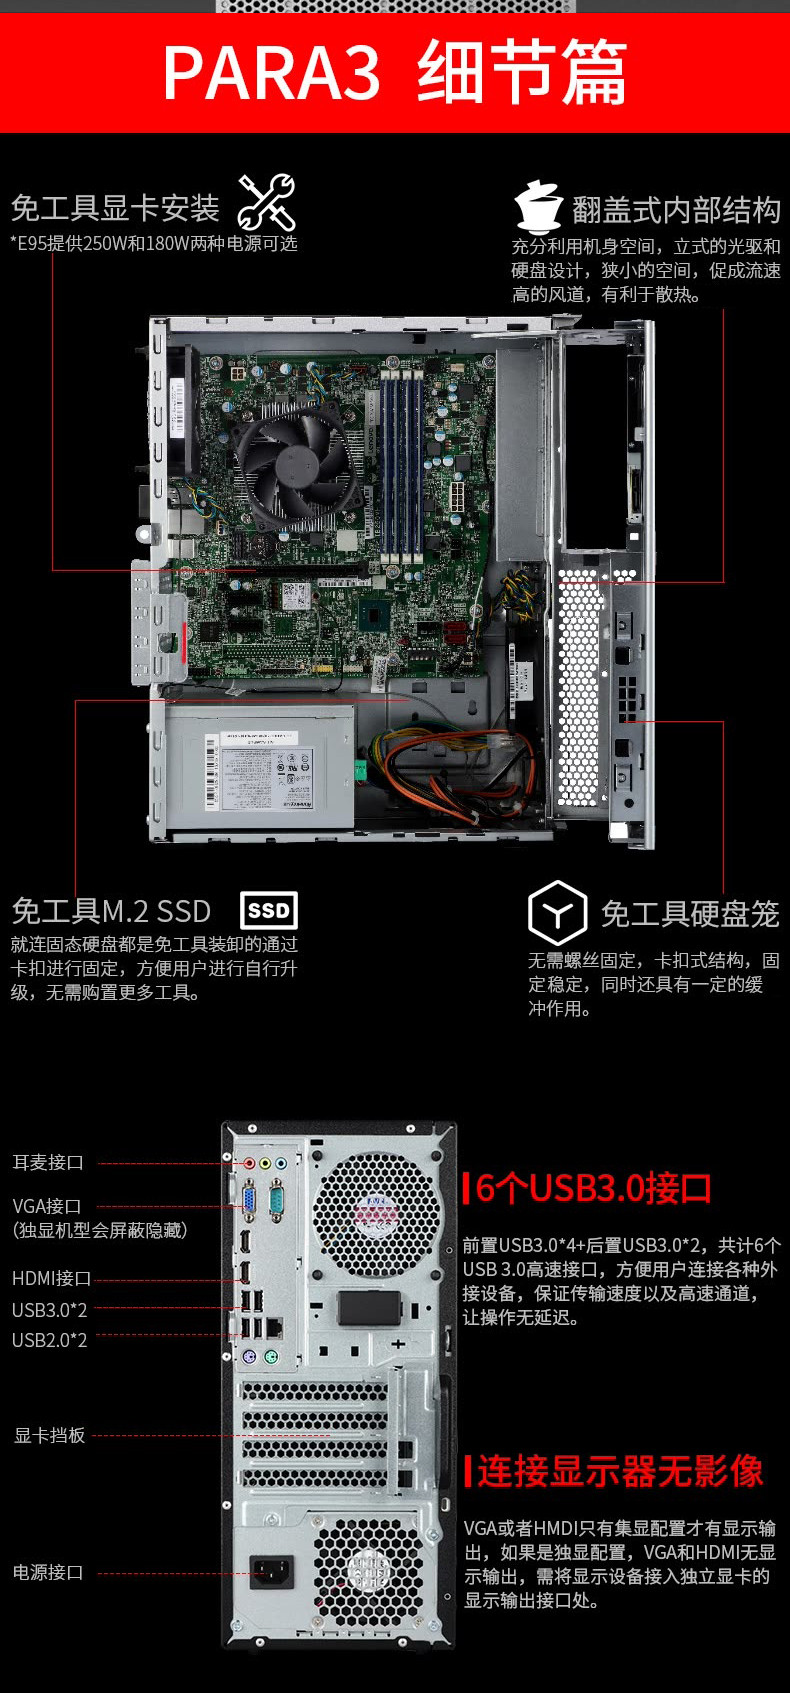 联想 19.5英寸显示器台式电脑E95 Intel G3930CPU,1T硬盘，4G内存，正版WIN